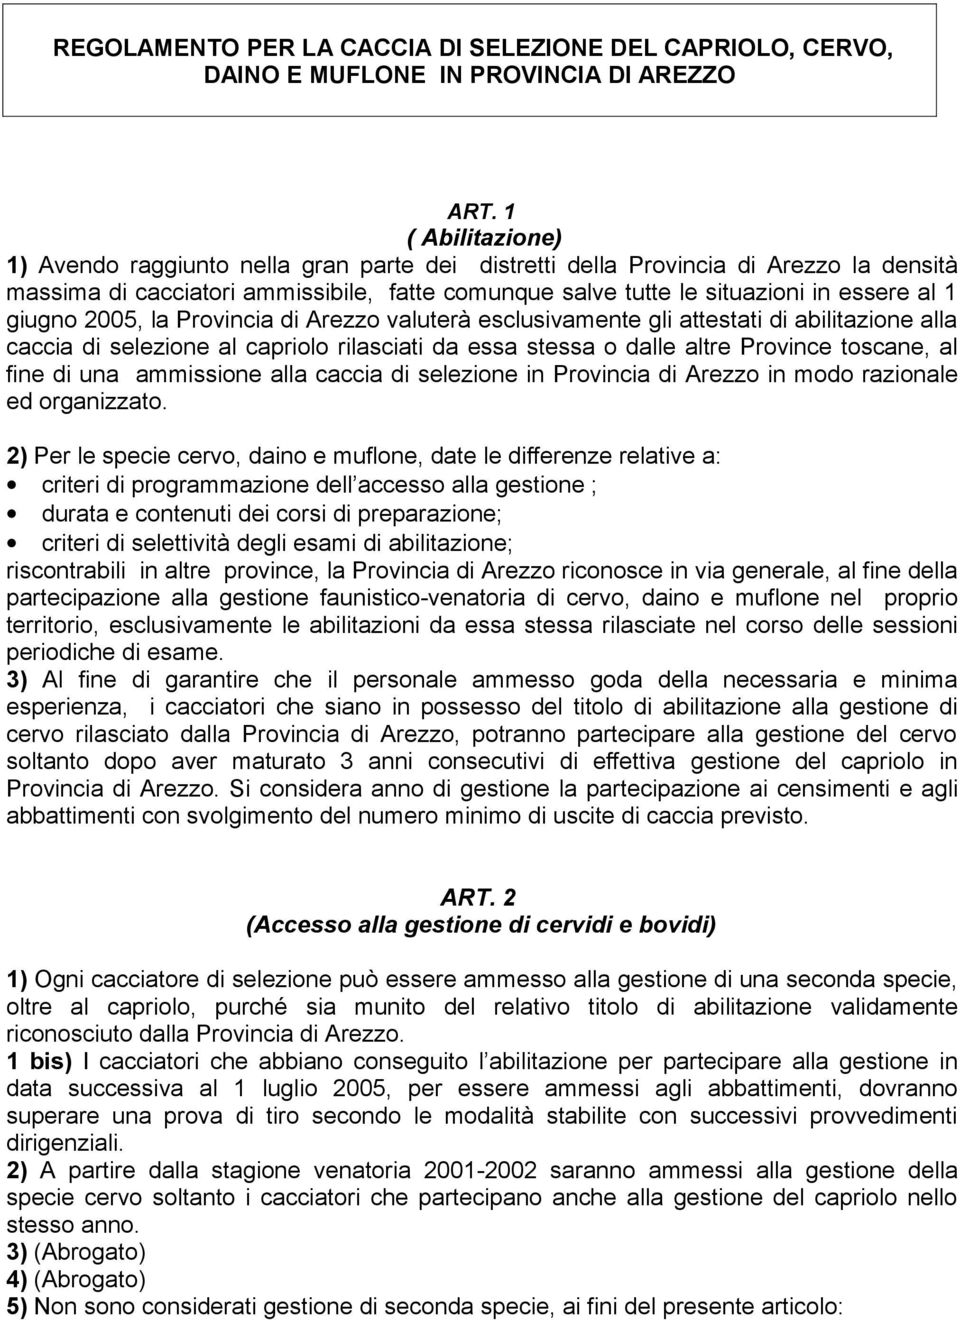 giugno 2005, la Provincia di Arezzo valuterà esclusivamente gli attestati di abilitazione alla caccia di selezione al capriolo rilasciati da essa stessa o dalle altre Province toscane, al fine di una